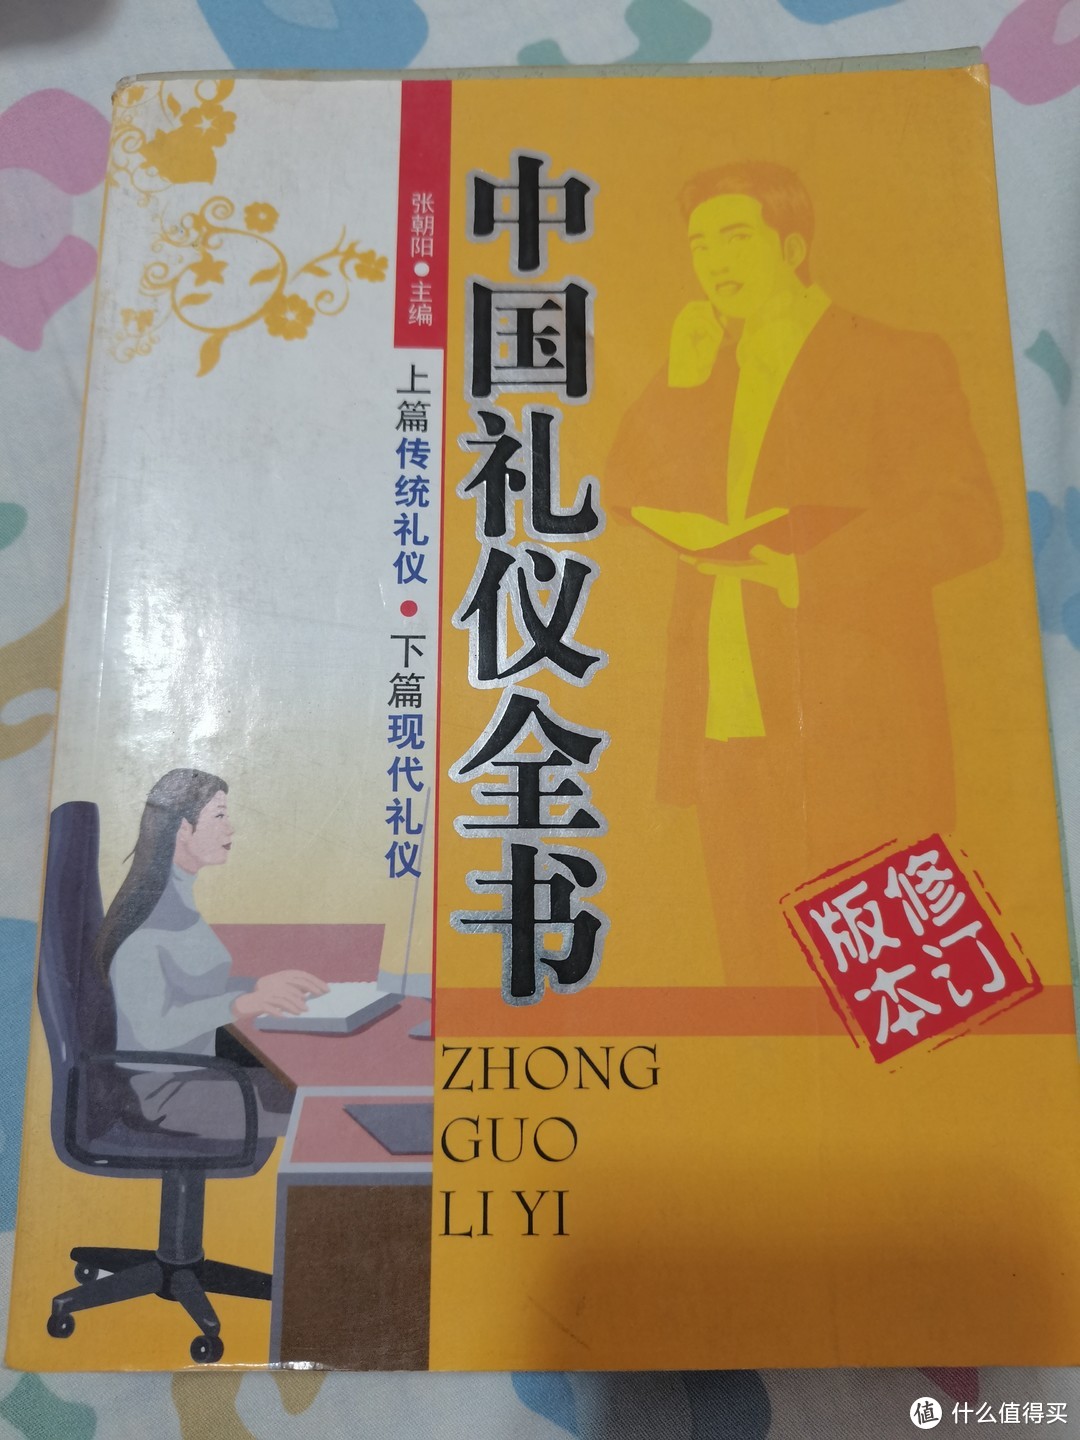 🌸细读《中国礼仪全书》|做名知礼仪懂礼节的新青年🌸